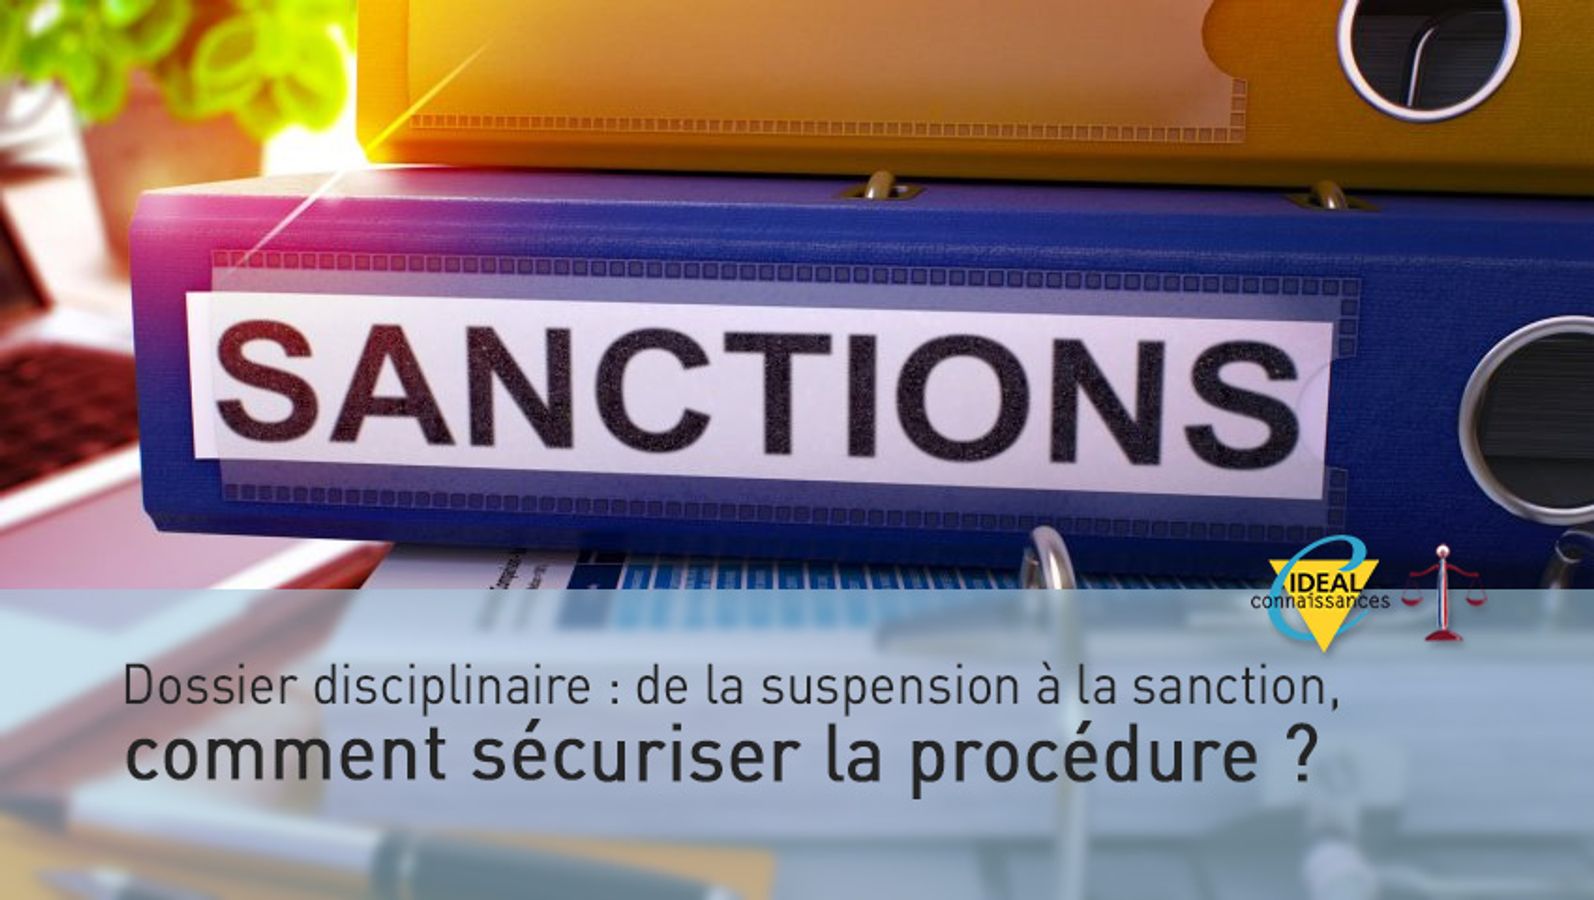 Dossier disciplinaire : de la suspension à la sanction, comment sécuriser la procédure ?